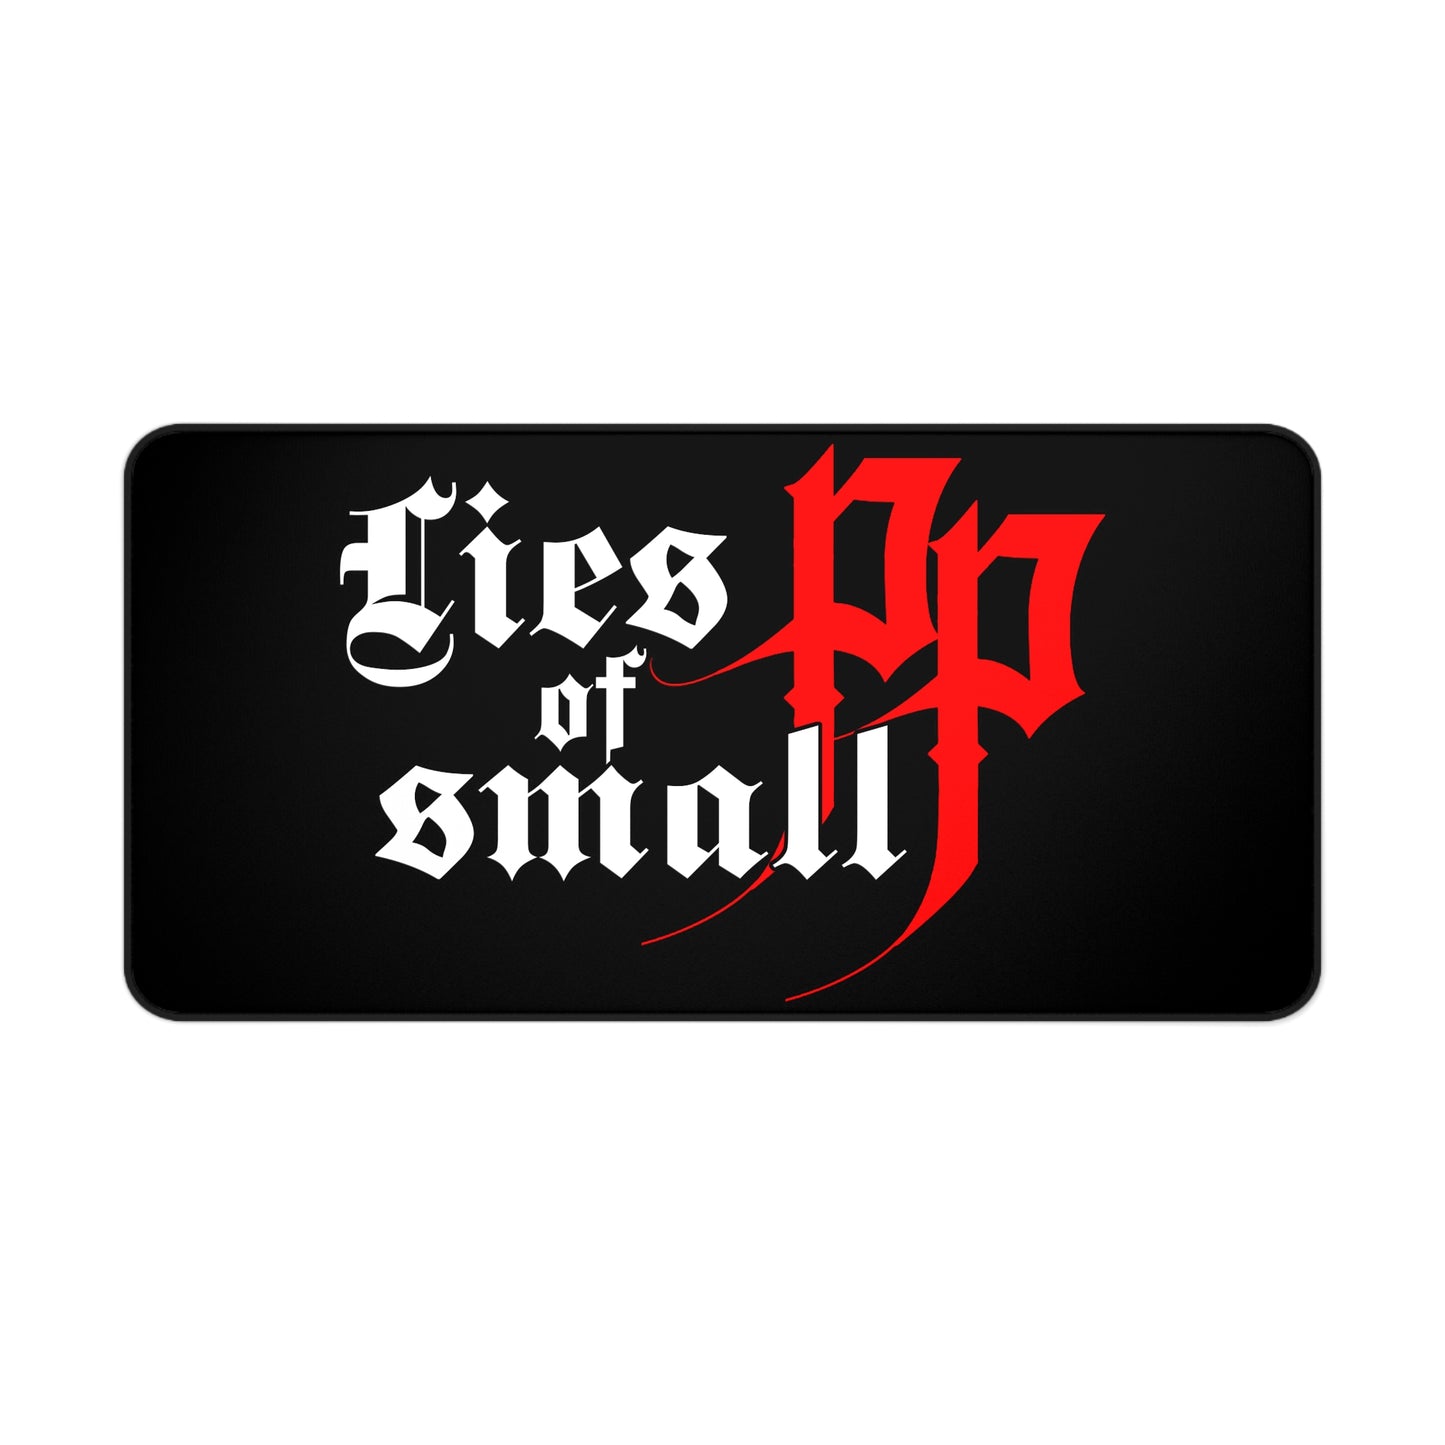 Lies of P Desk Mat - Lies of Small PP